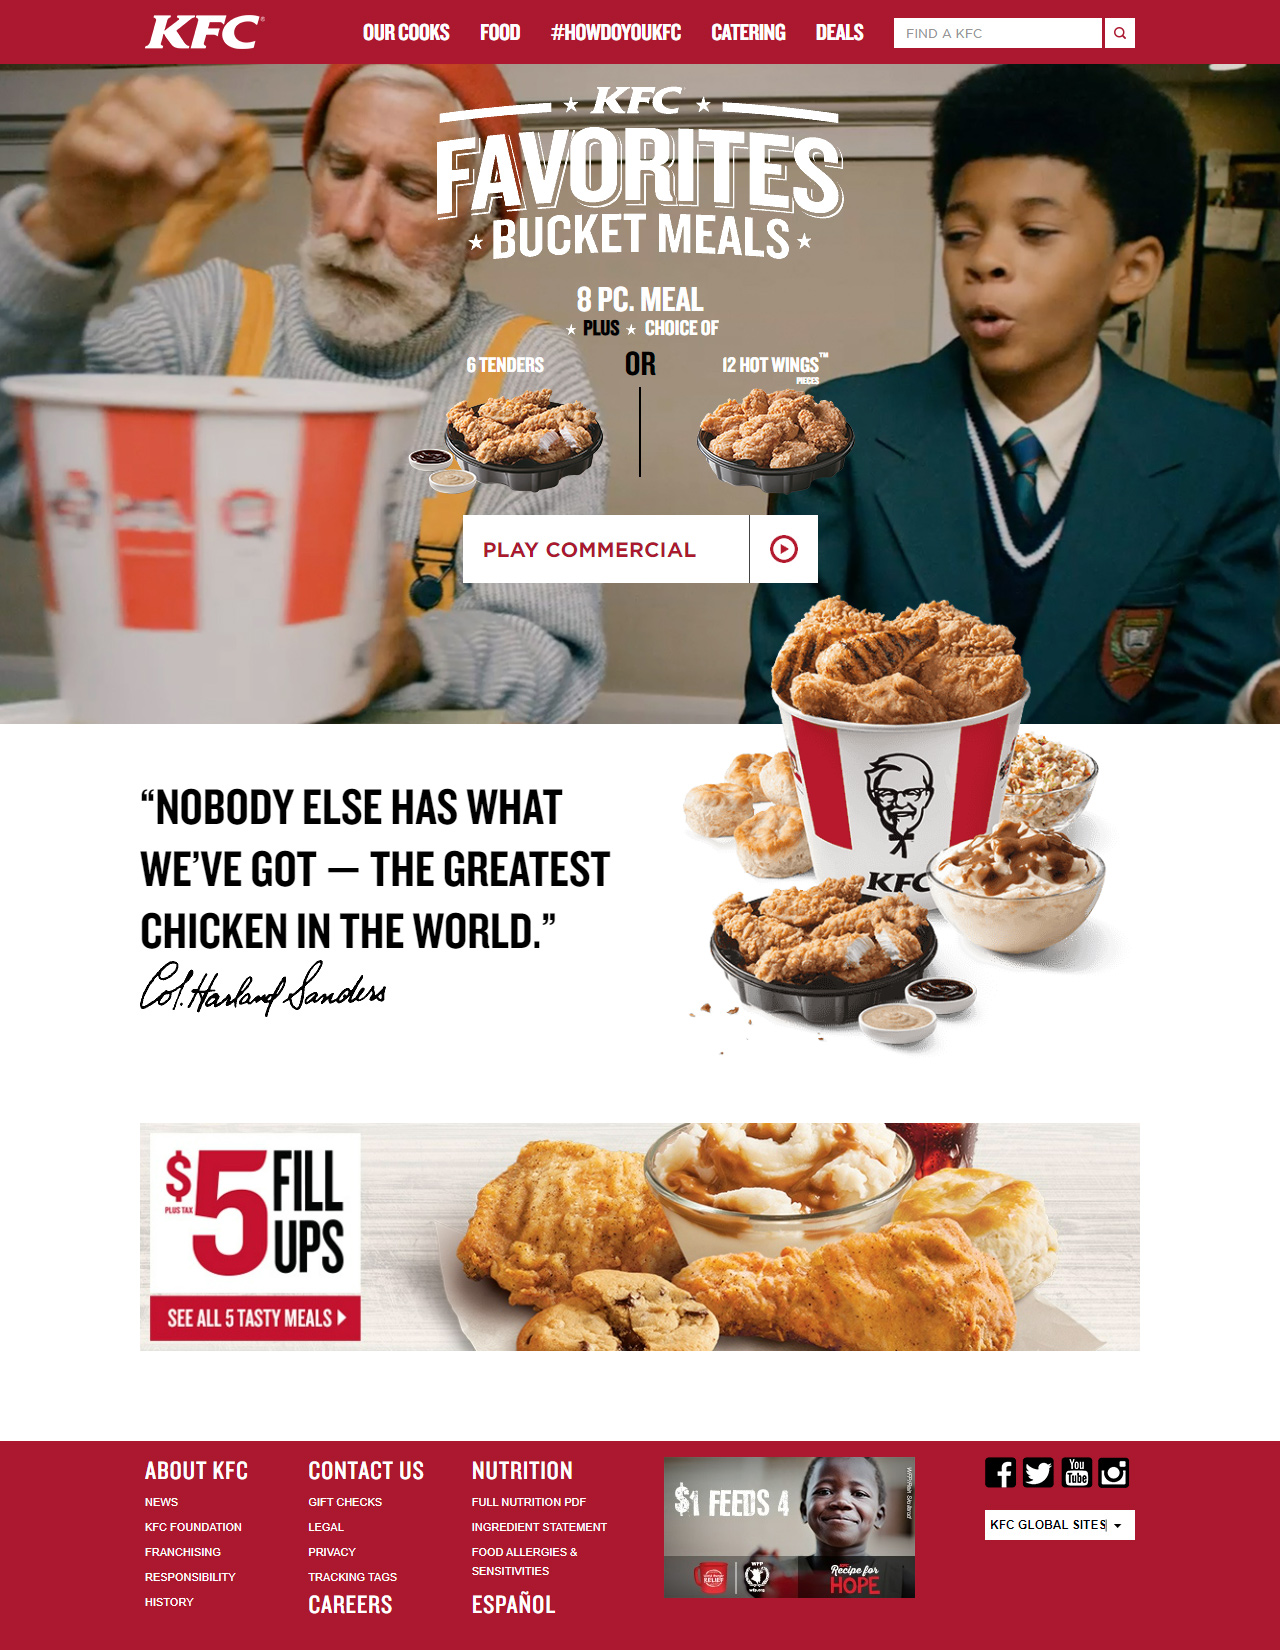 KFC in 2014